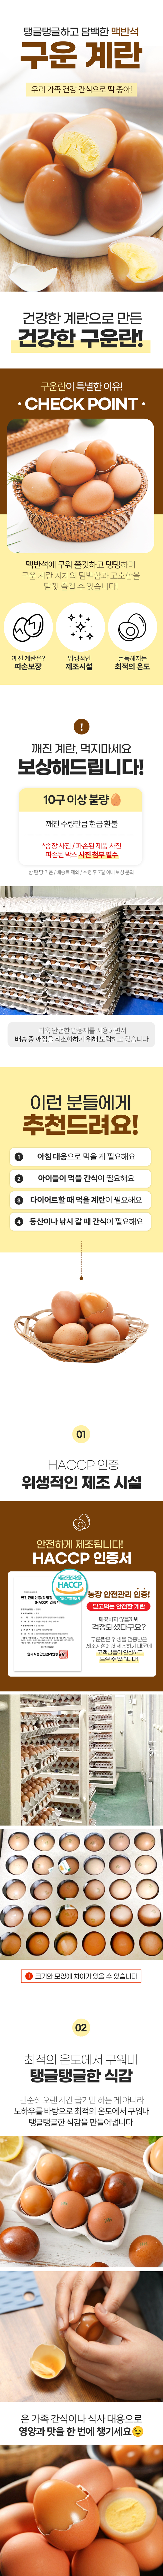 baked_egg01.jpg